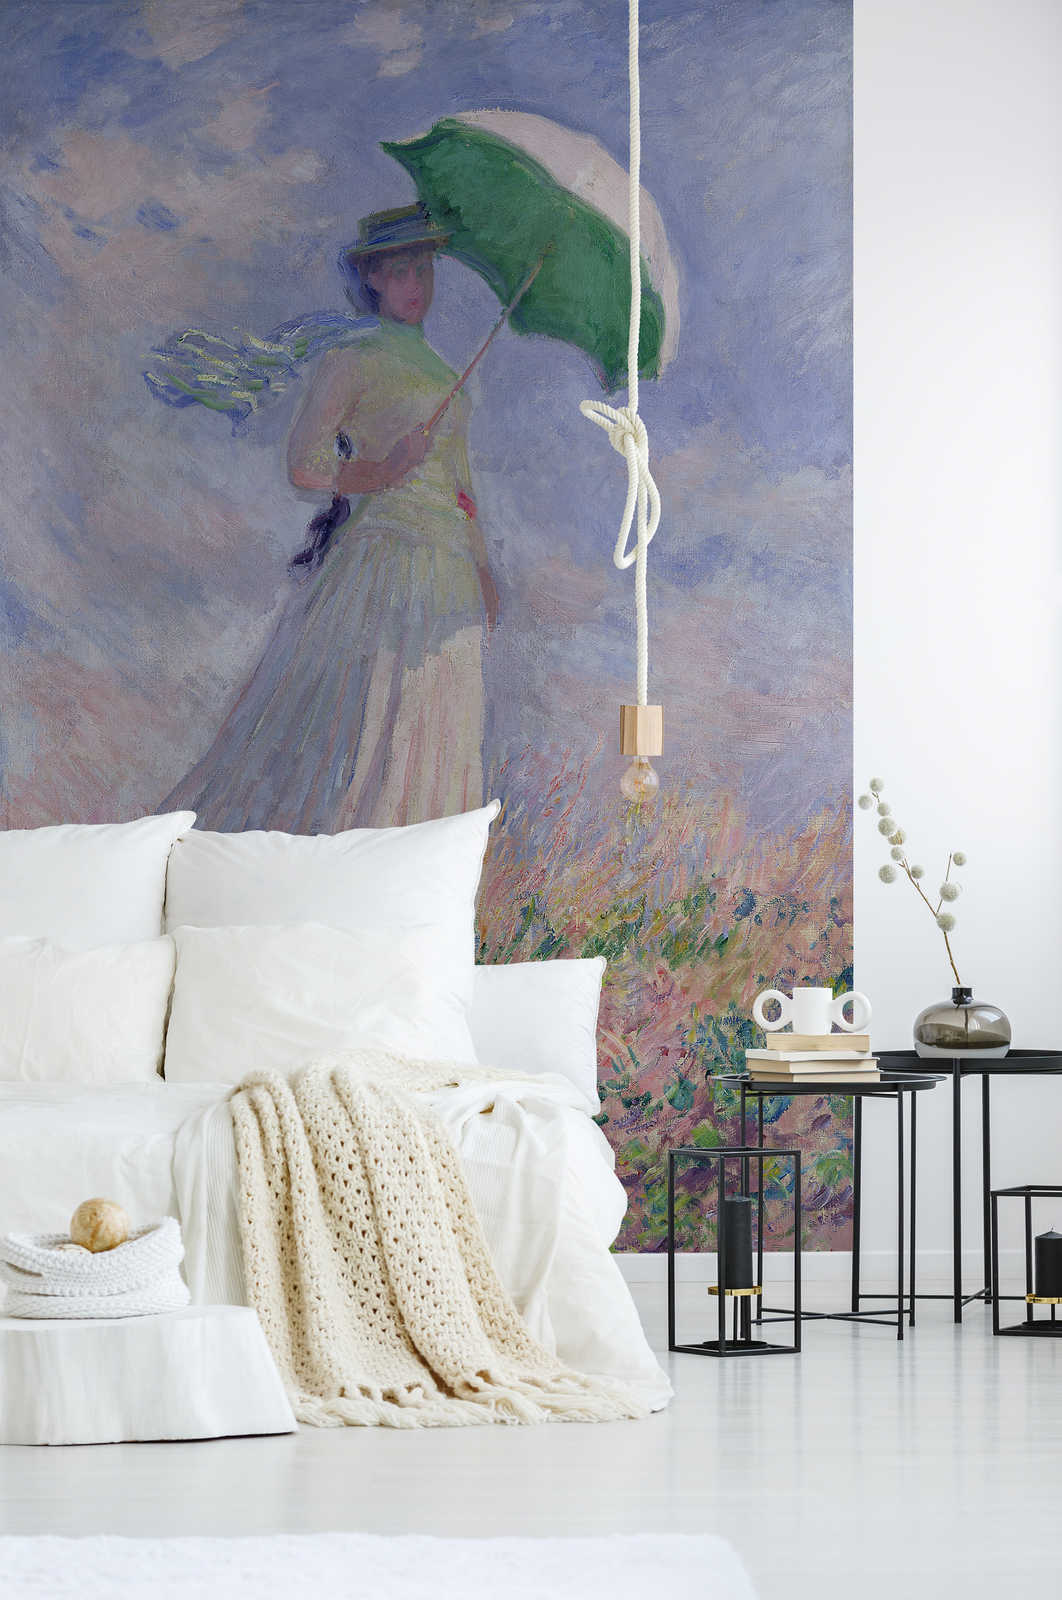             Fotomurali "Donna con ombrellino girata a destra" di Claude Monet
        